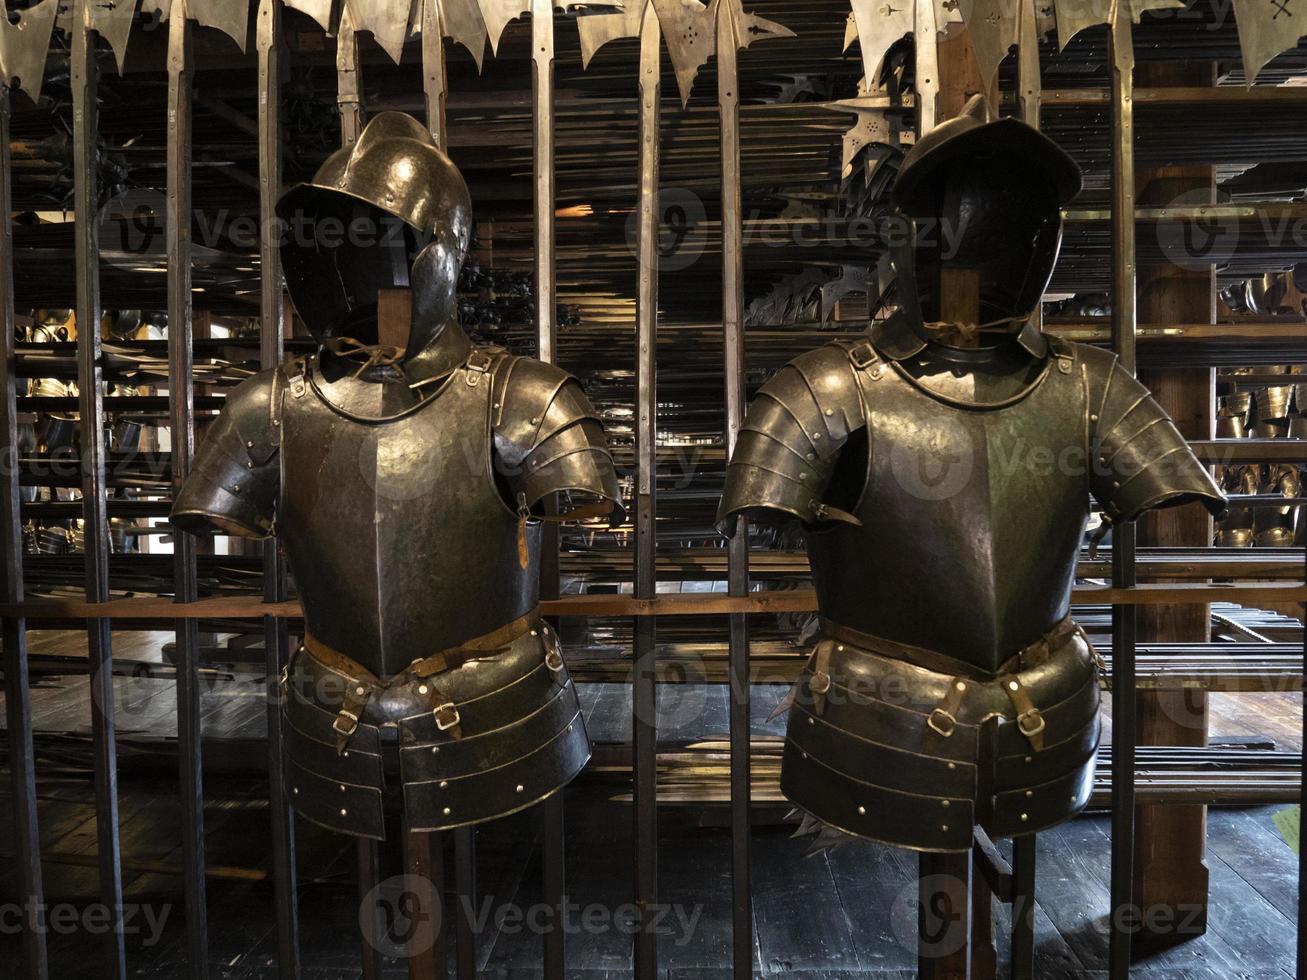 molti medievale ferro metallo armatura foto